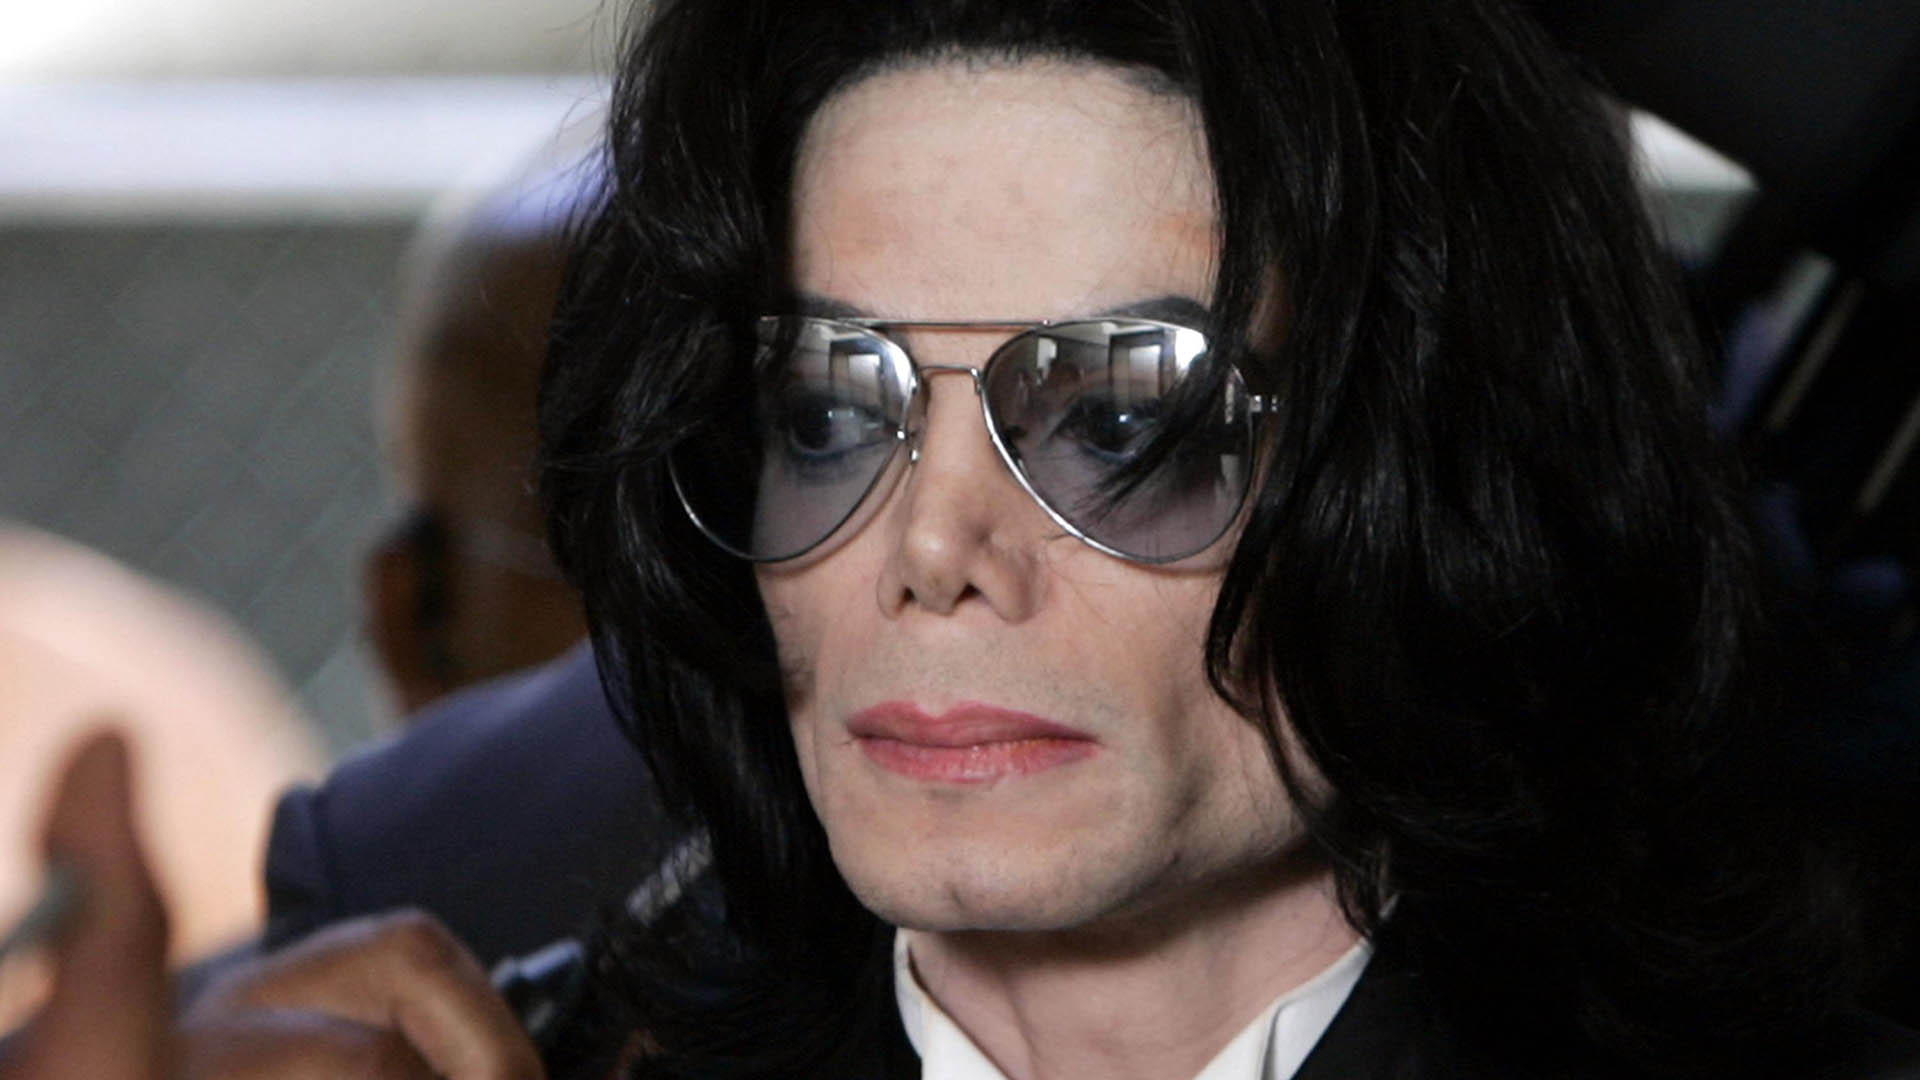 Michael Jackson, en el Tribunal del condado de Santa Bárbara, el día que fue absuelto de diez cargos en su contra por abuso de menores. OTO/POOL/KEVORK DJANSEZIAN (Photo by KEVORK DJANSEZIAN / POOL / AFP)